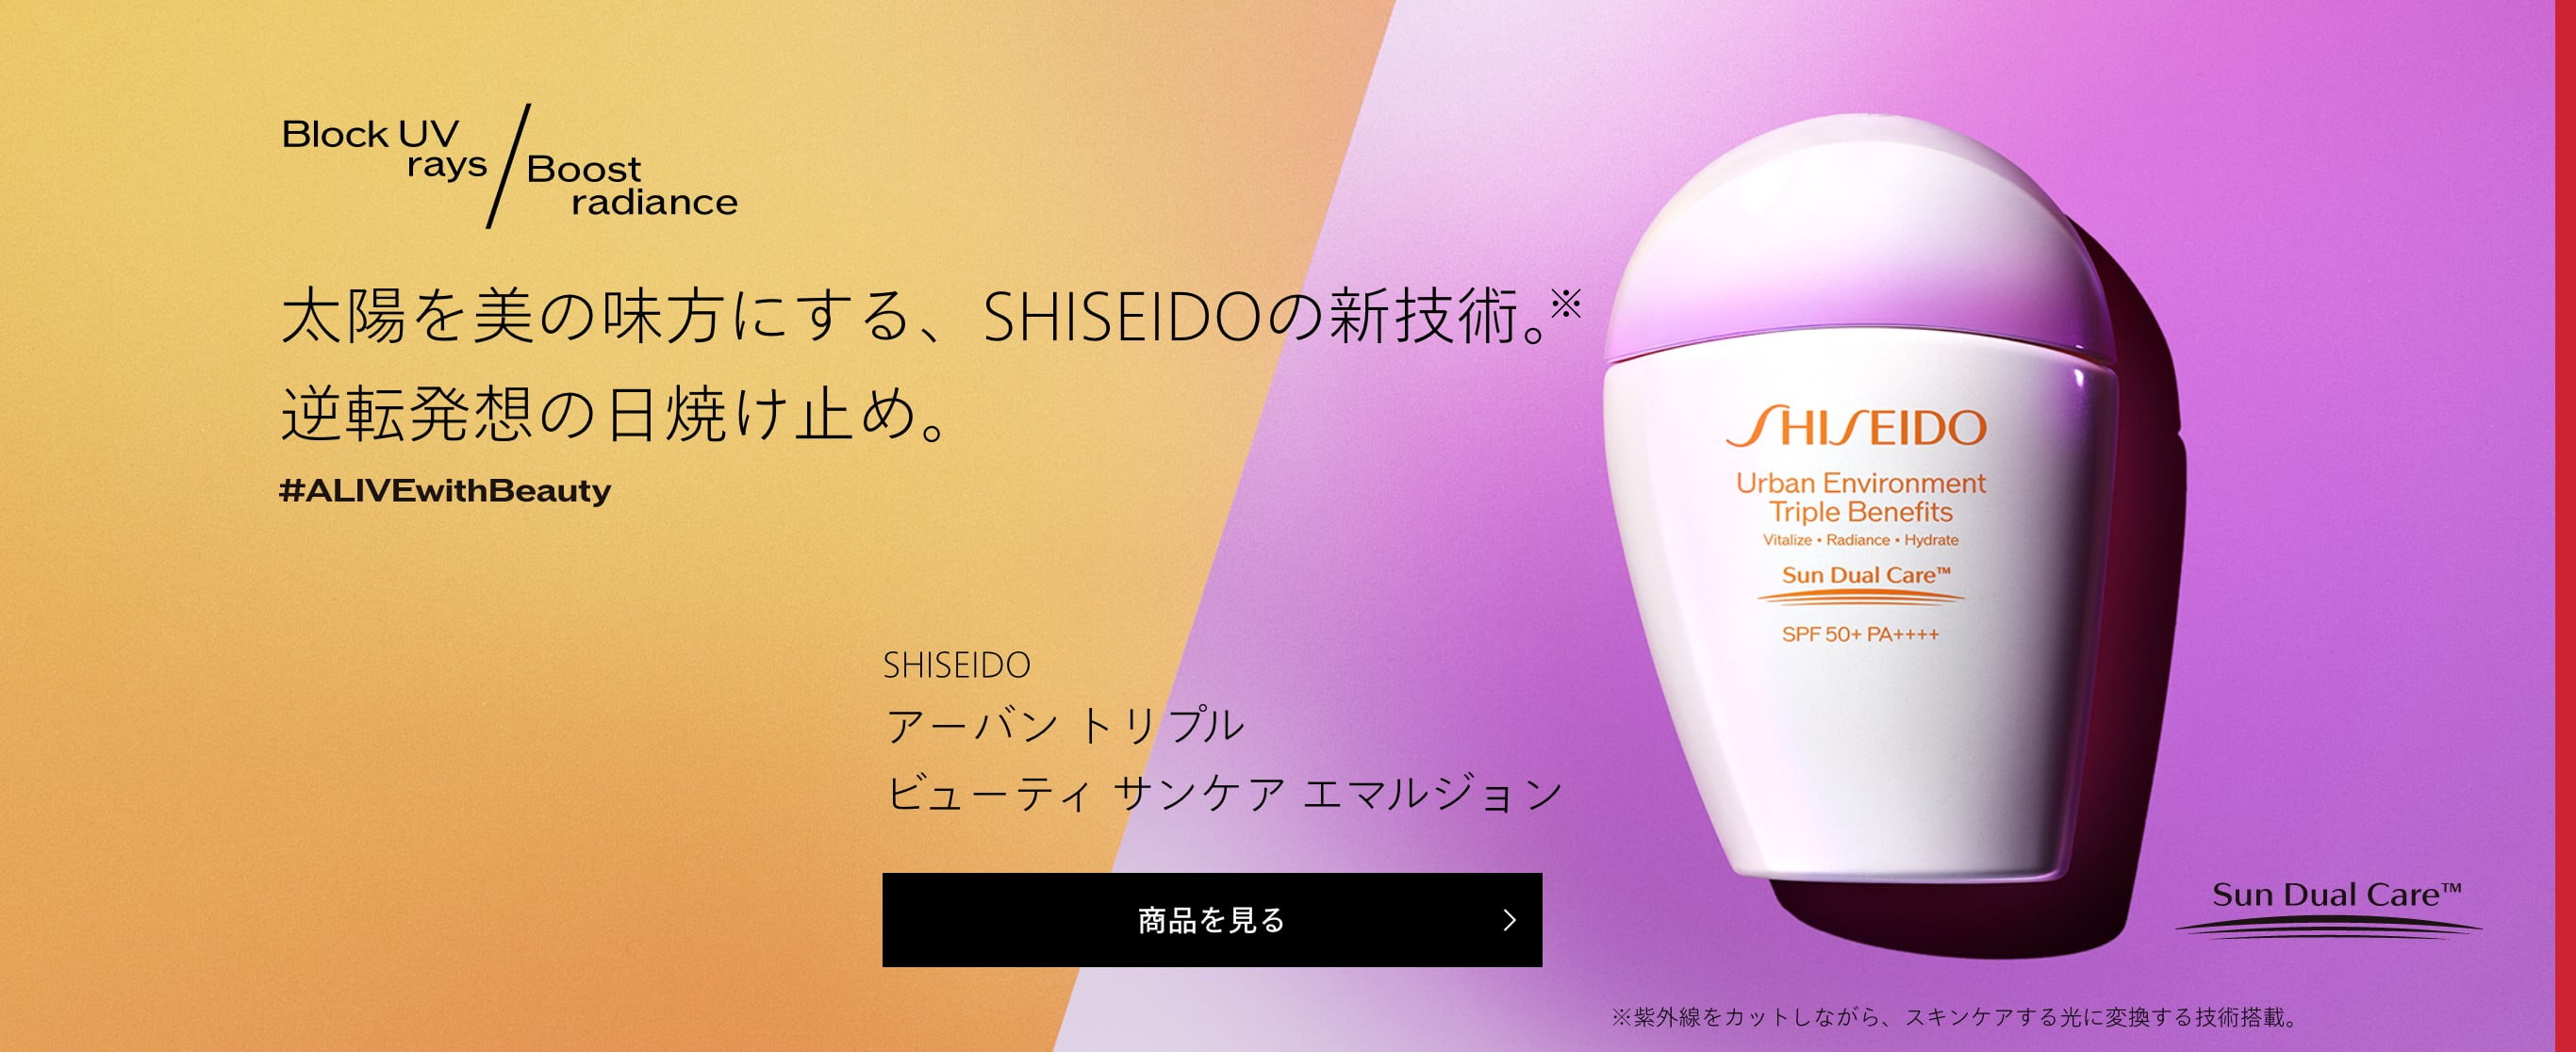 SHISEIDO サンケア | SHISEIDO | 資生堂